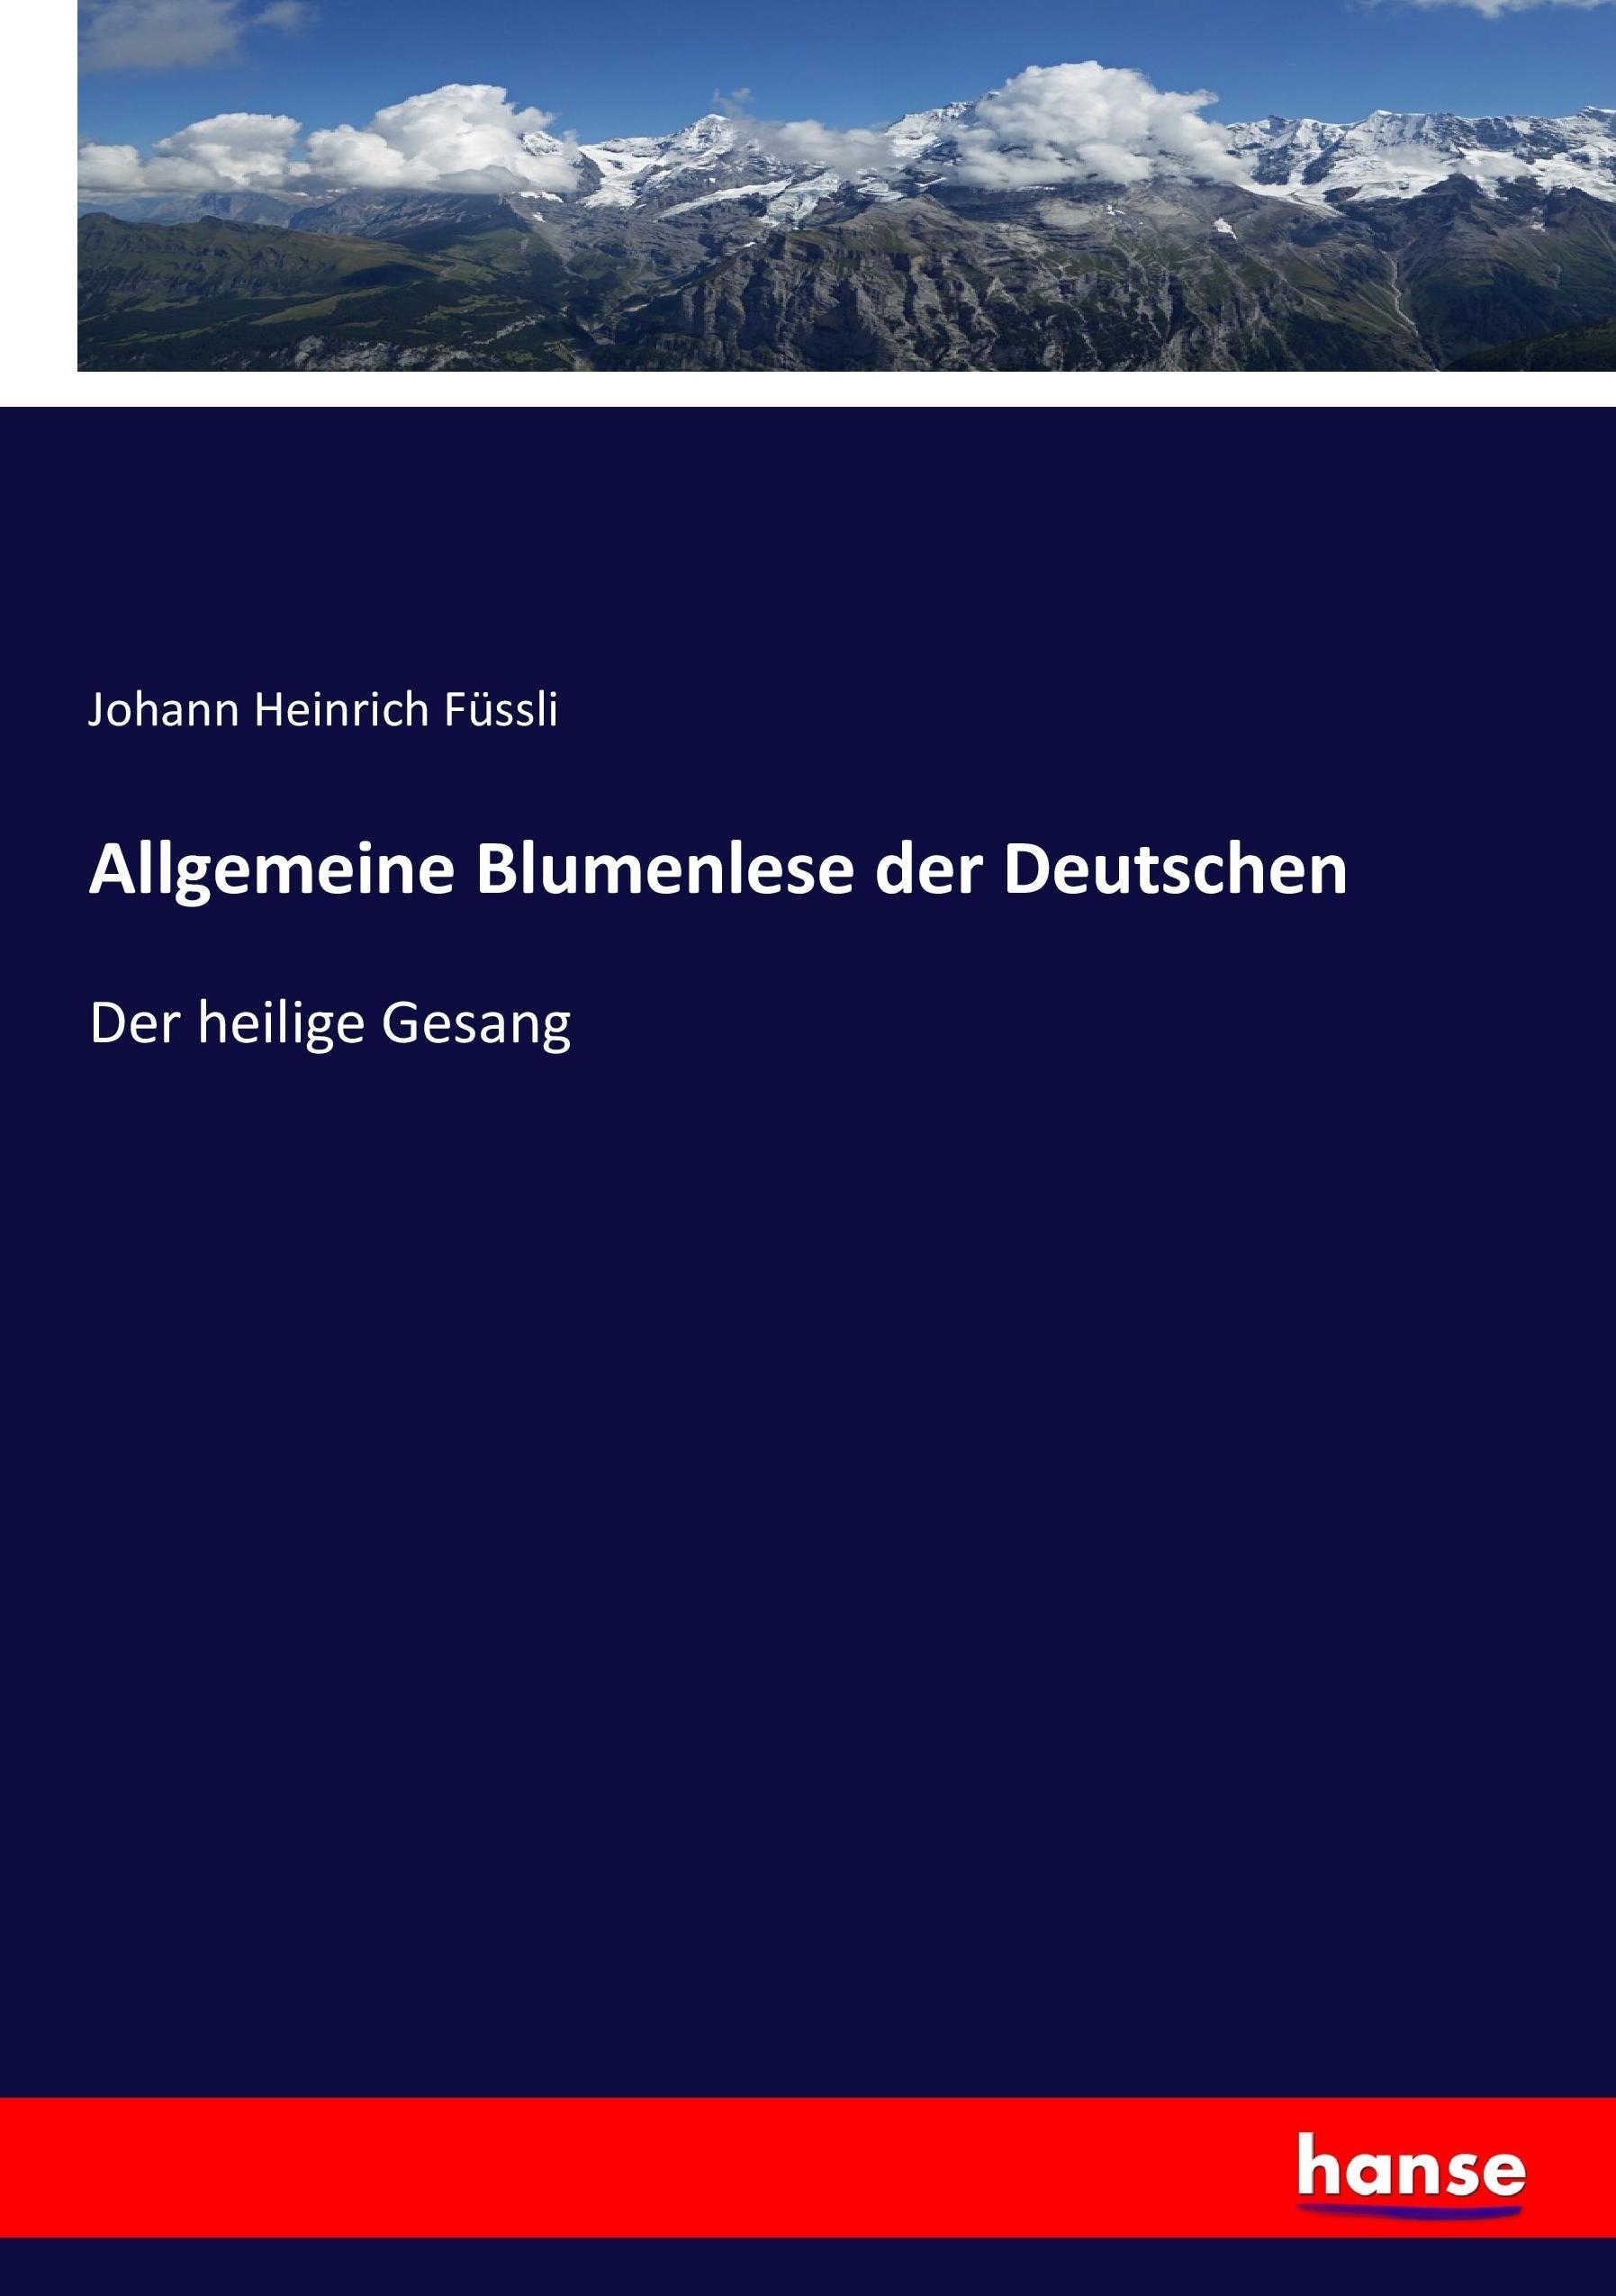 Allgemeine Blumenlese der Deutschen | Der heilige Gesang | Johann Heinrich Füssli | Taschenbuch | Paperback | 312 S. | Deutsch | 2017 | hansebooks | EAN 9783744631464 - Füssli, Johann Heinrich